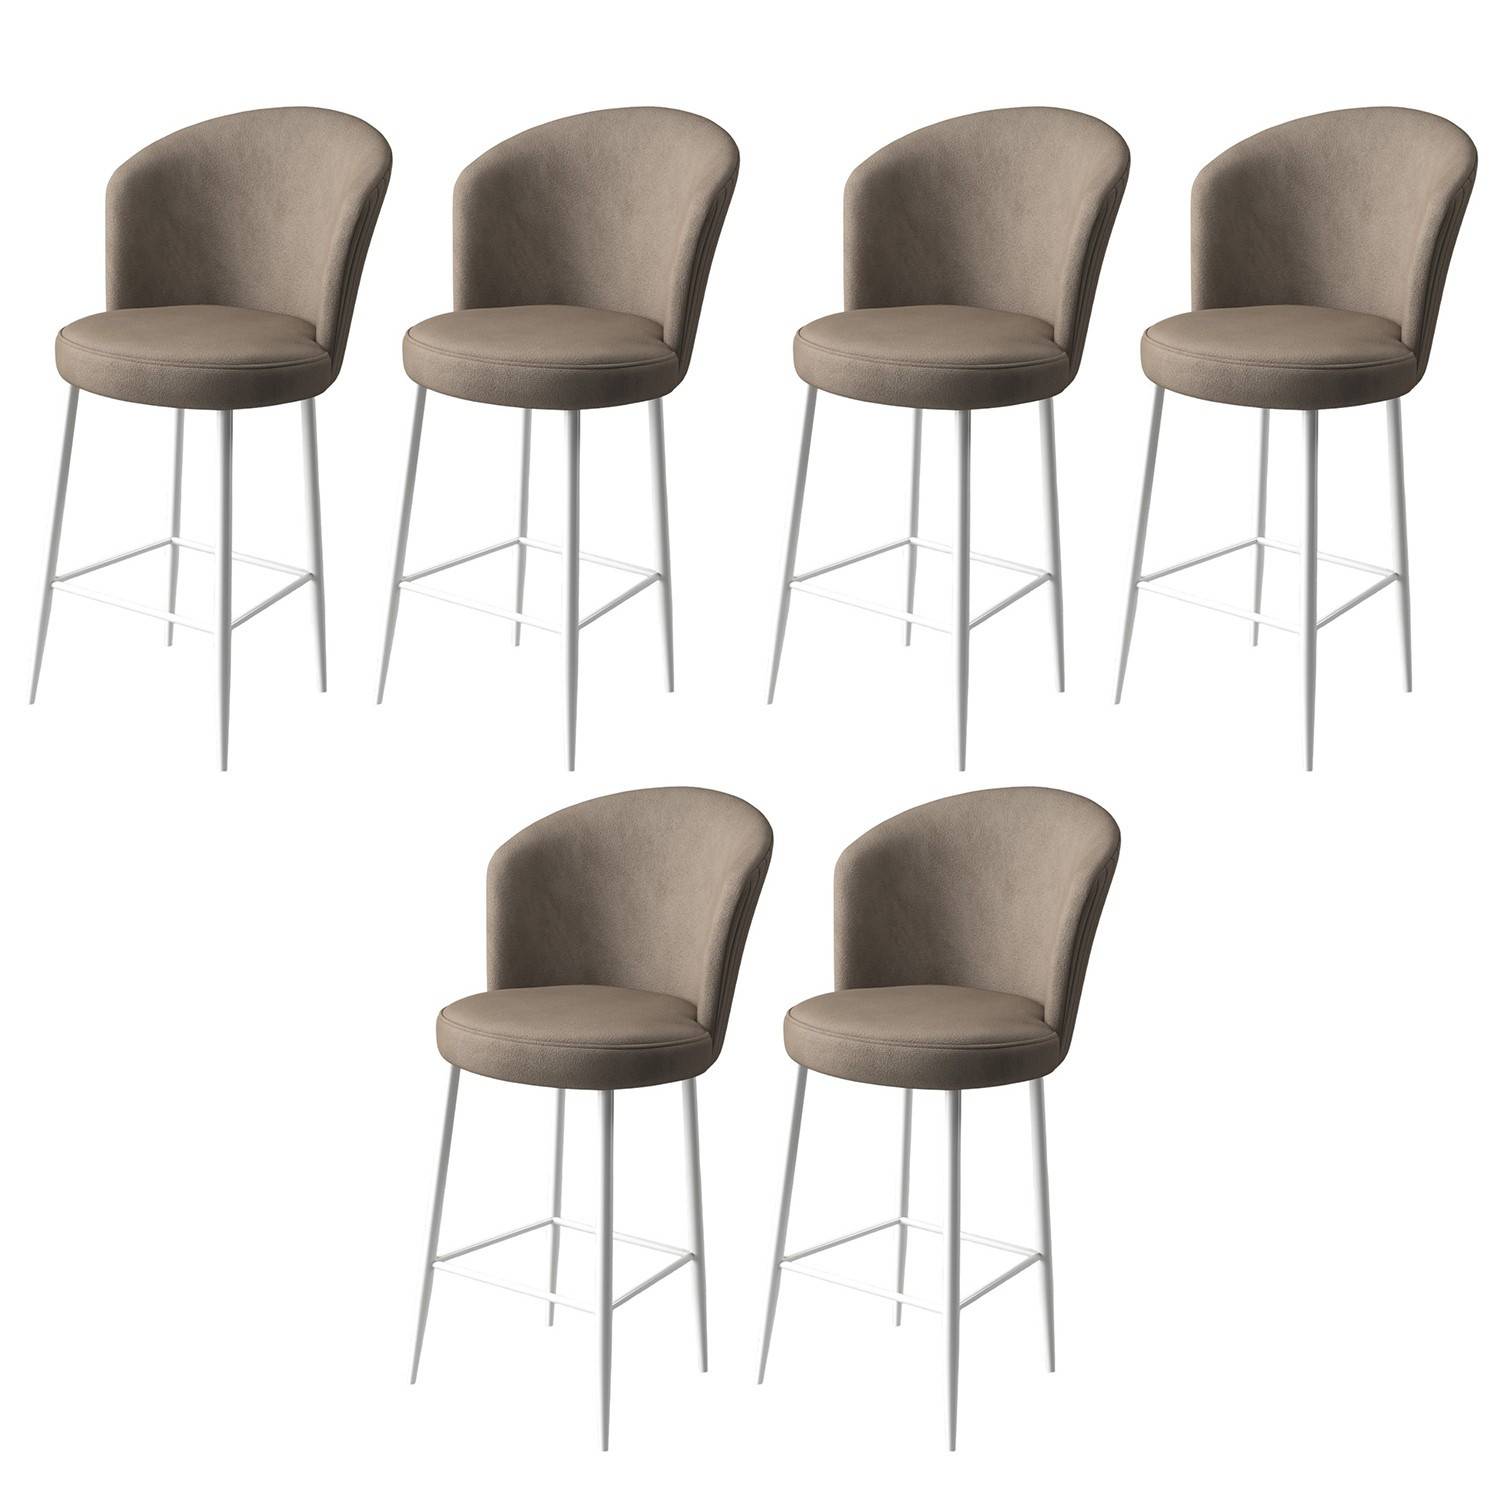 Lote de 6 sillas de bar Floranso de terciopelo capuchino y metal blanco